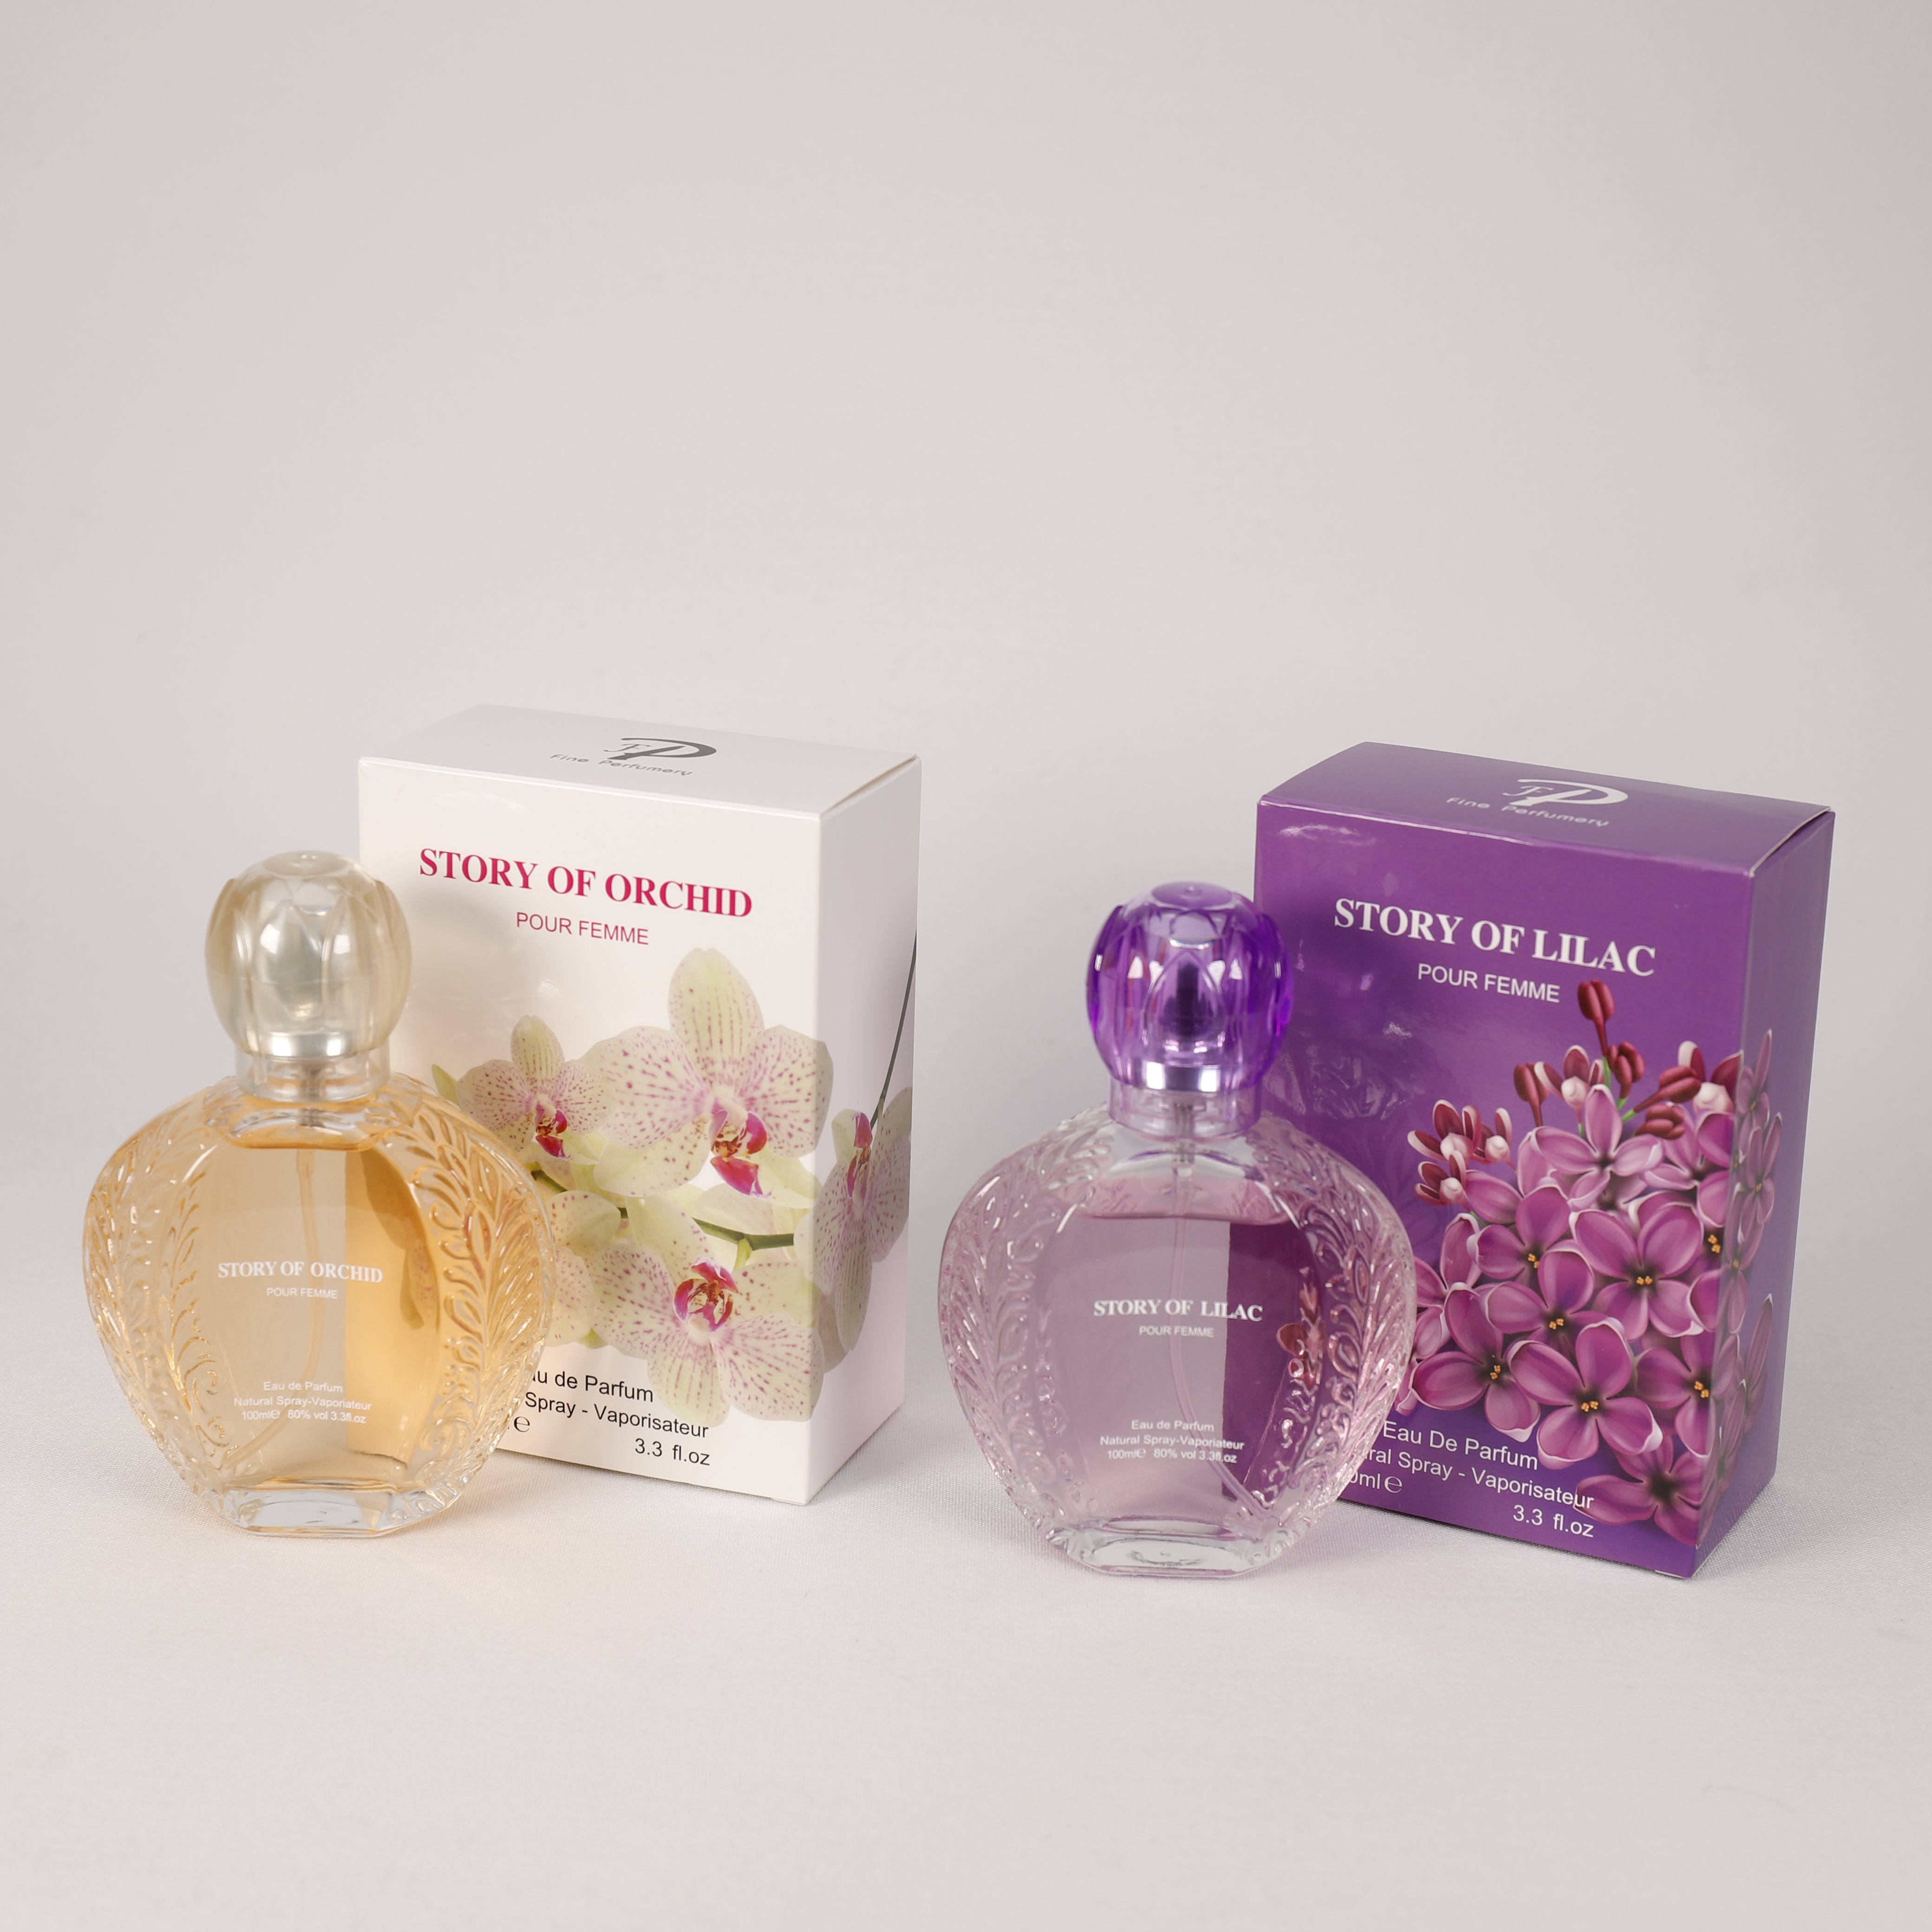 Story Of Orchid für Damen, Vaporizer mit natürlichem Spray, 100 ml, Duft, TOP Parfüm, NEU OVP